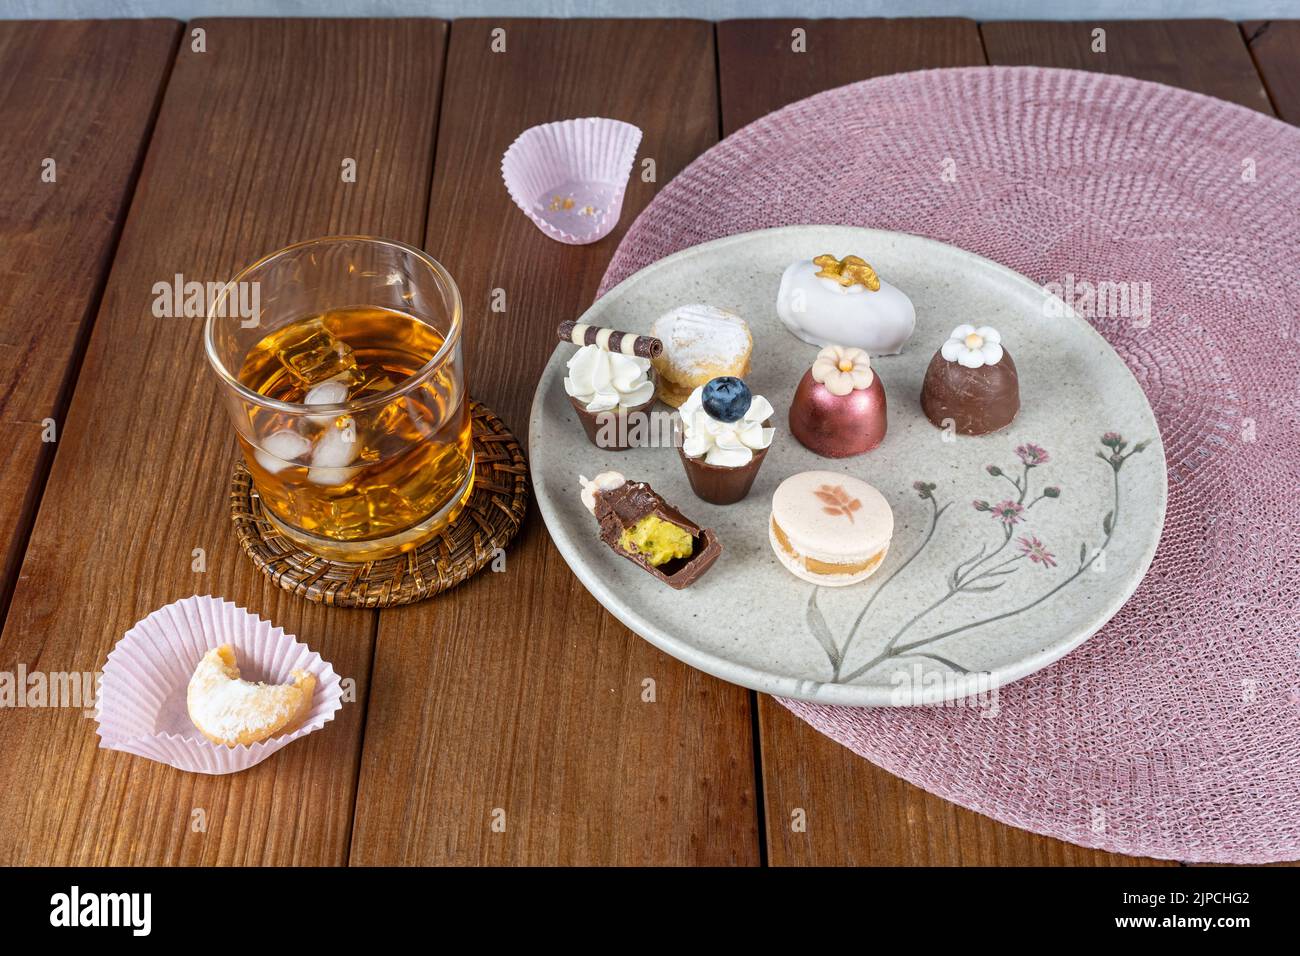 Piccolo bicchiere di cioccolato con panna montata e gelato ai mirtilli accanto ad altri dolci e bicchiere di whiskey. Foto Stock